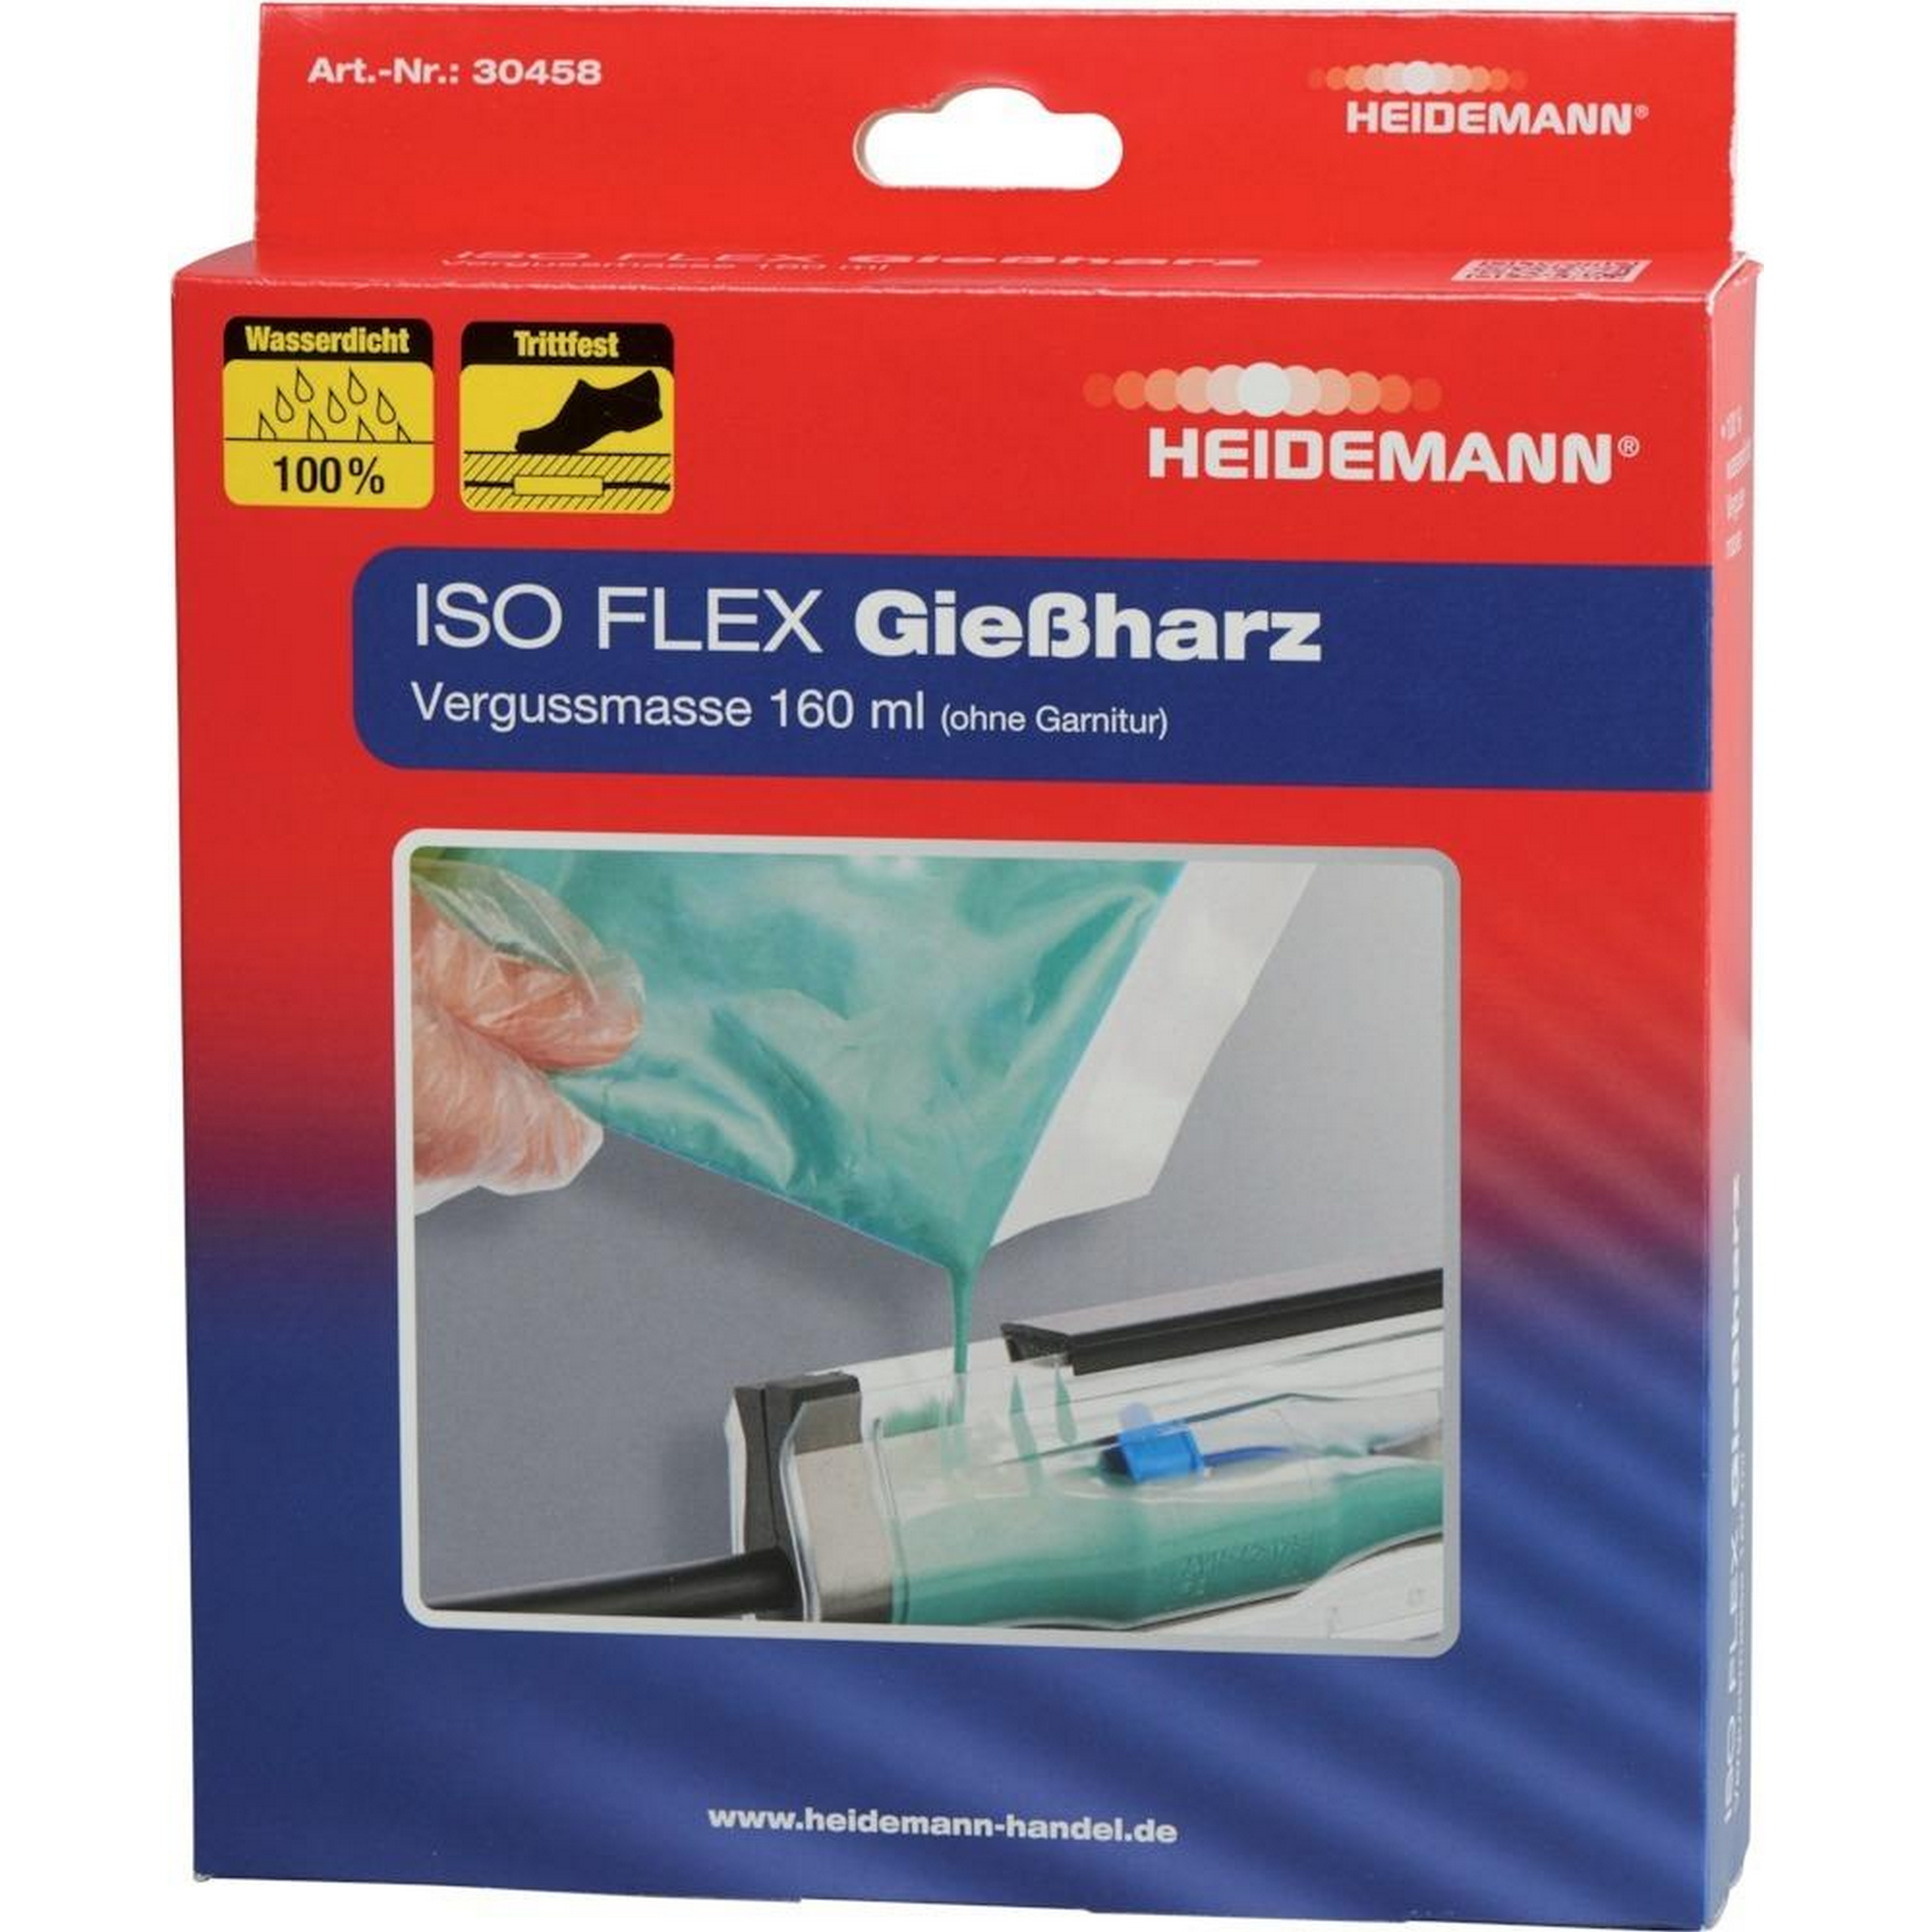 Nachfüllpack Gießharz 'Iso Flex' 160 ml + product picture